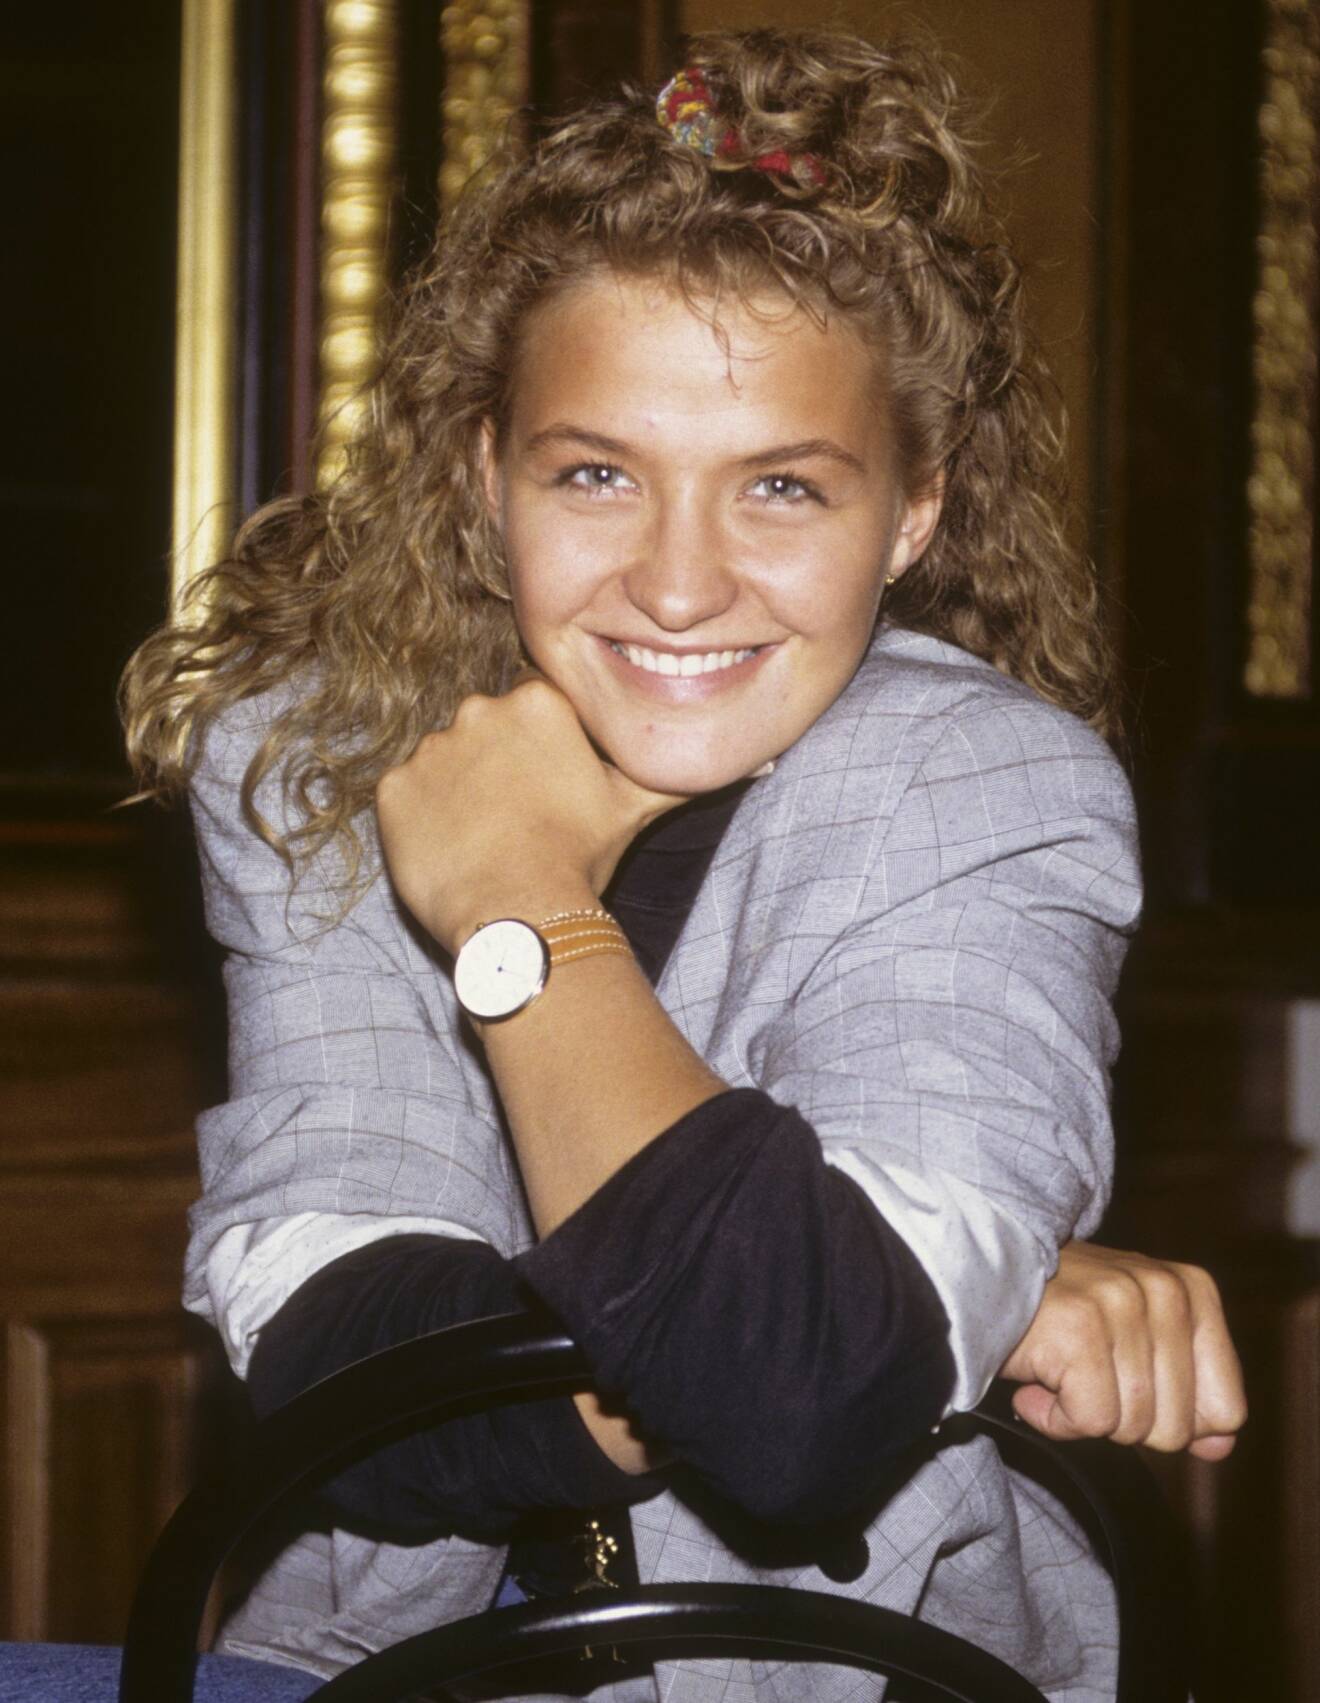 Kristin Kaspersen 1989